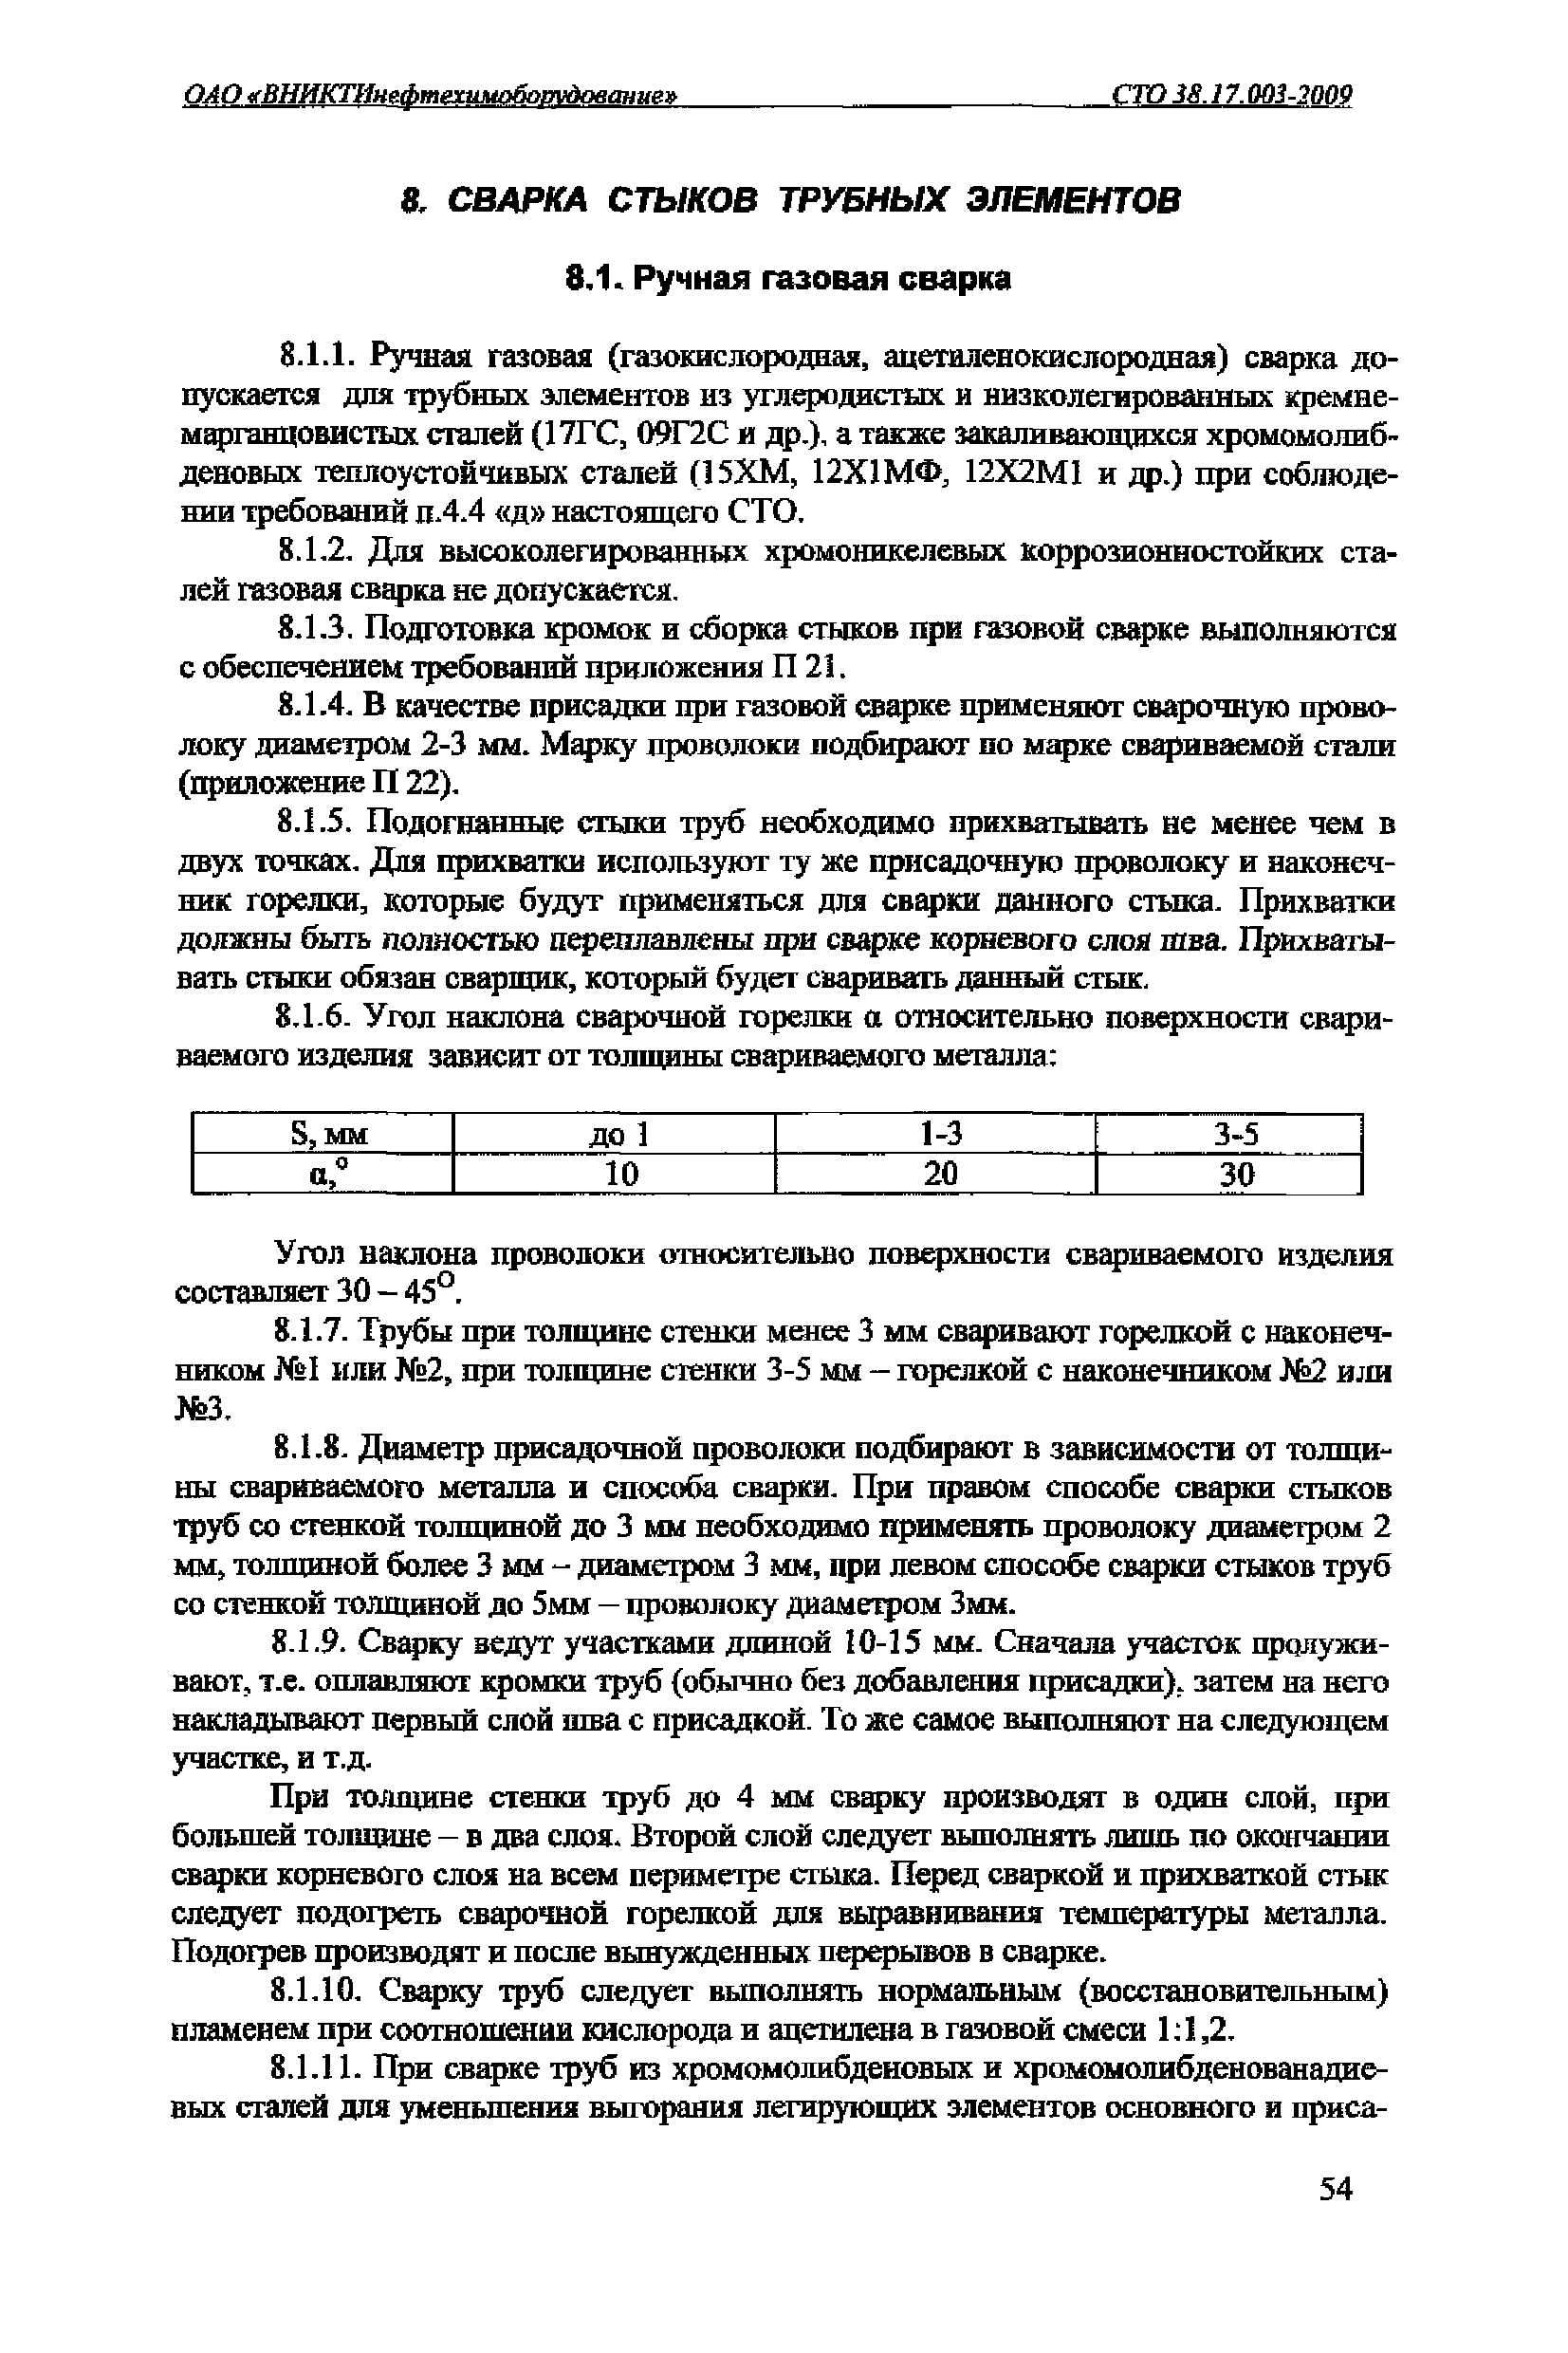 СТО 38.17.003-2009